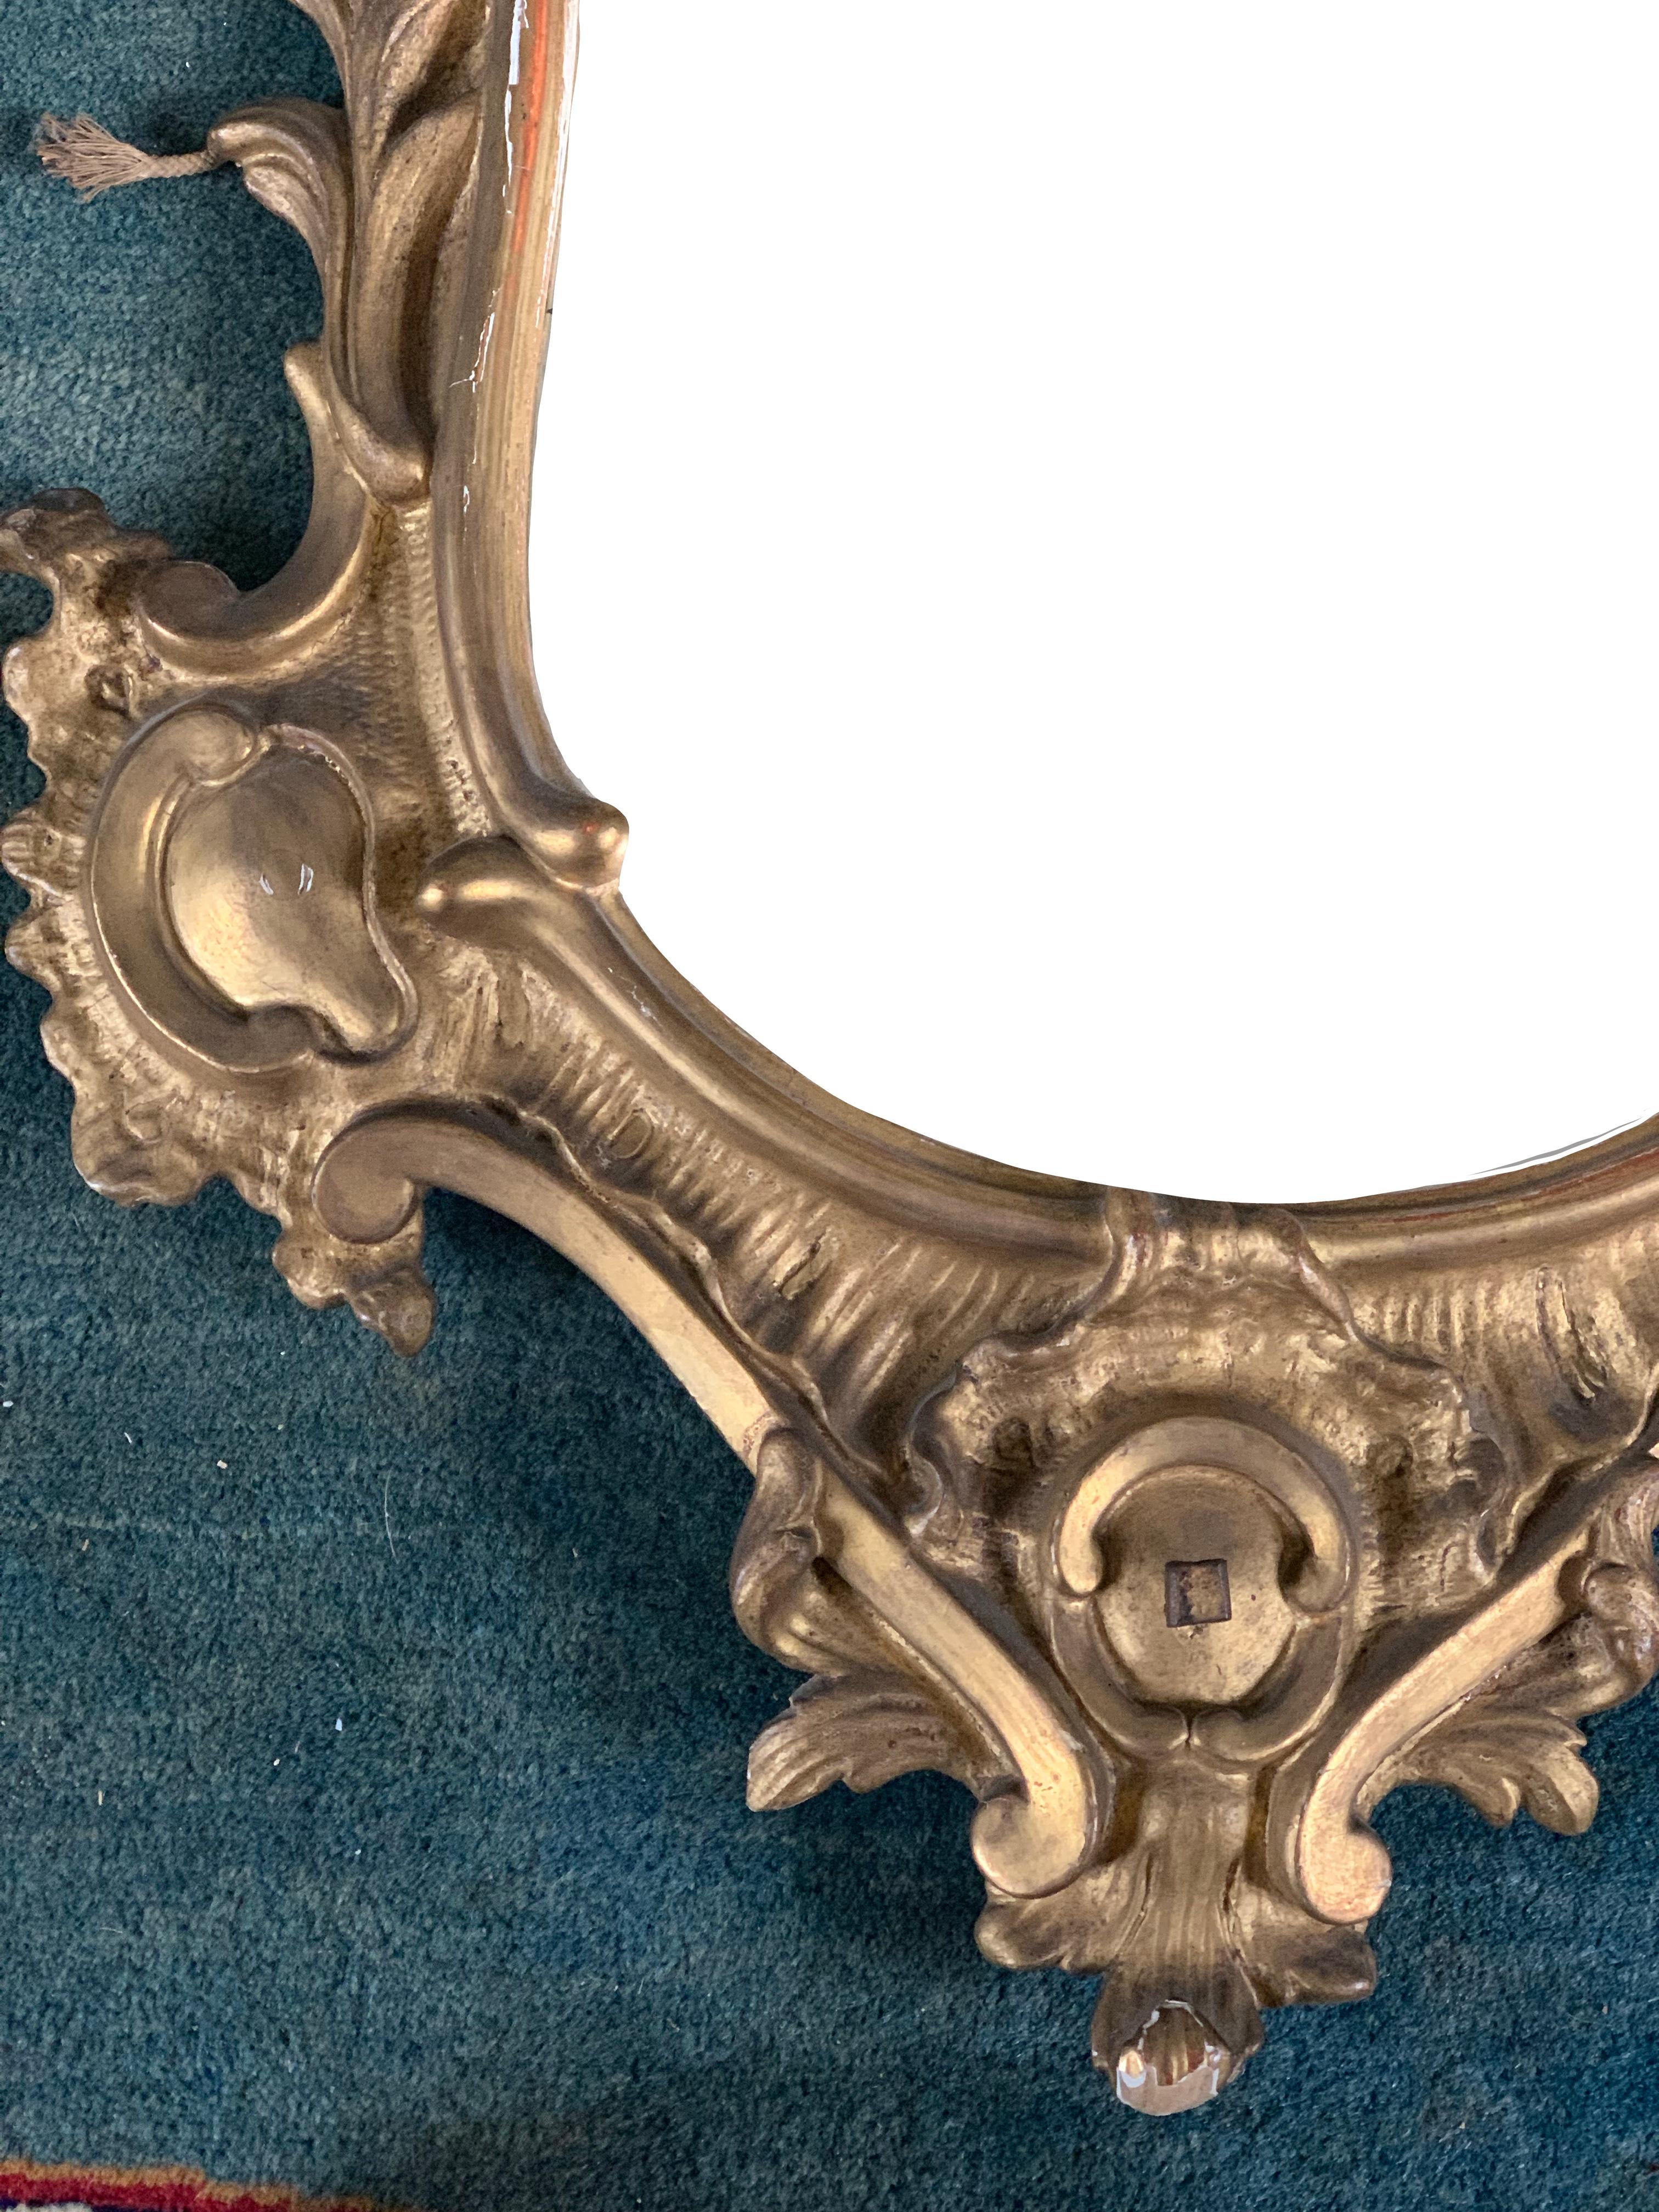 Très beau miroir, de style Regency, un style de transition entre les styles Louis XIV et Louis XV. On reconnaît ce style à ses nombreuses volutes, coquilles et feuilles. Un miroir très délicat et élégant en vogue.
 